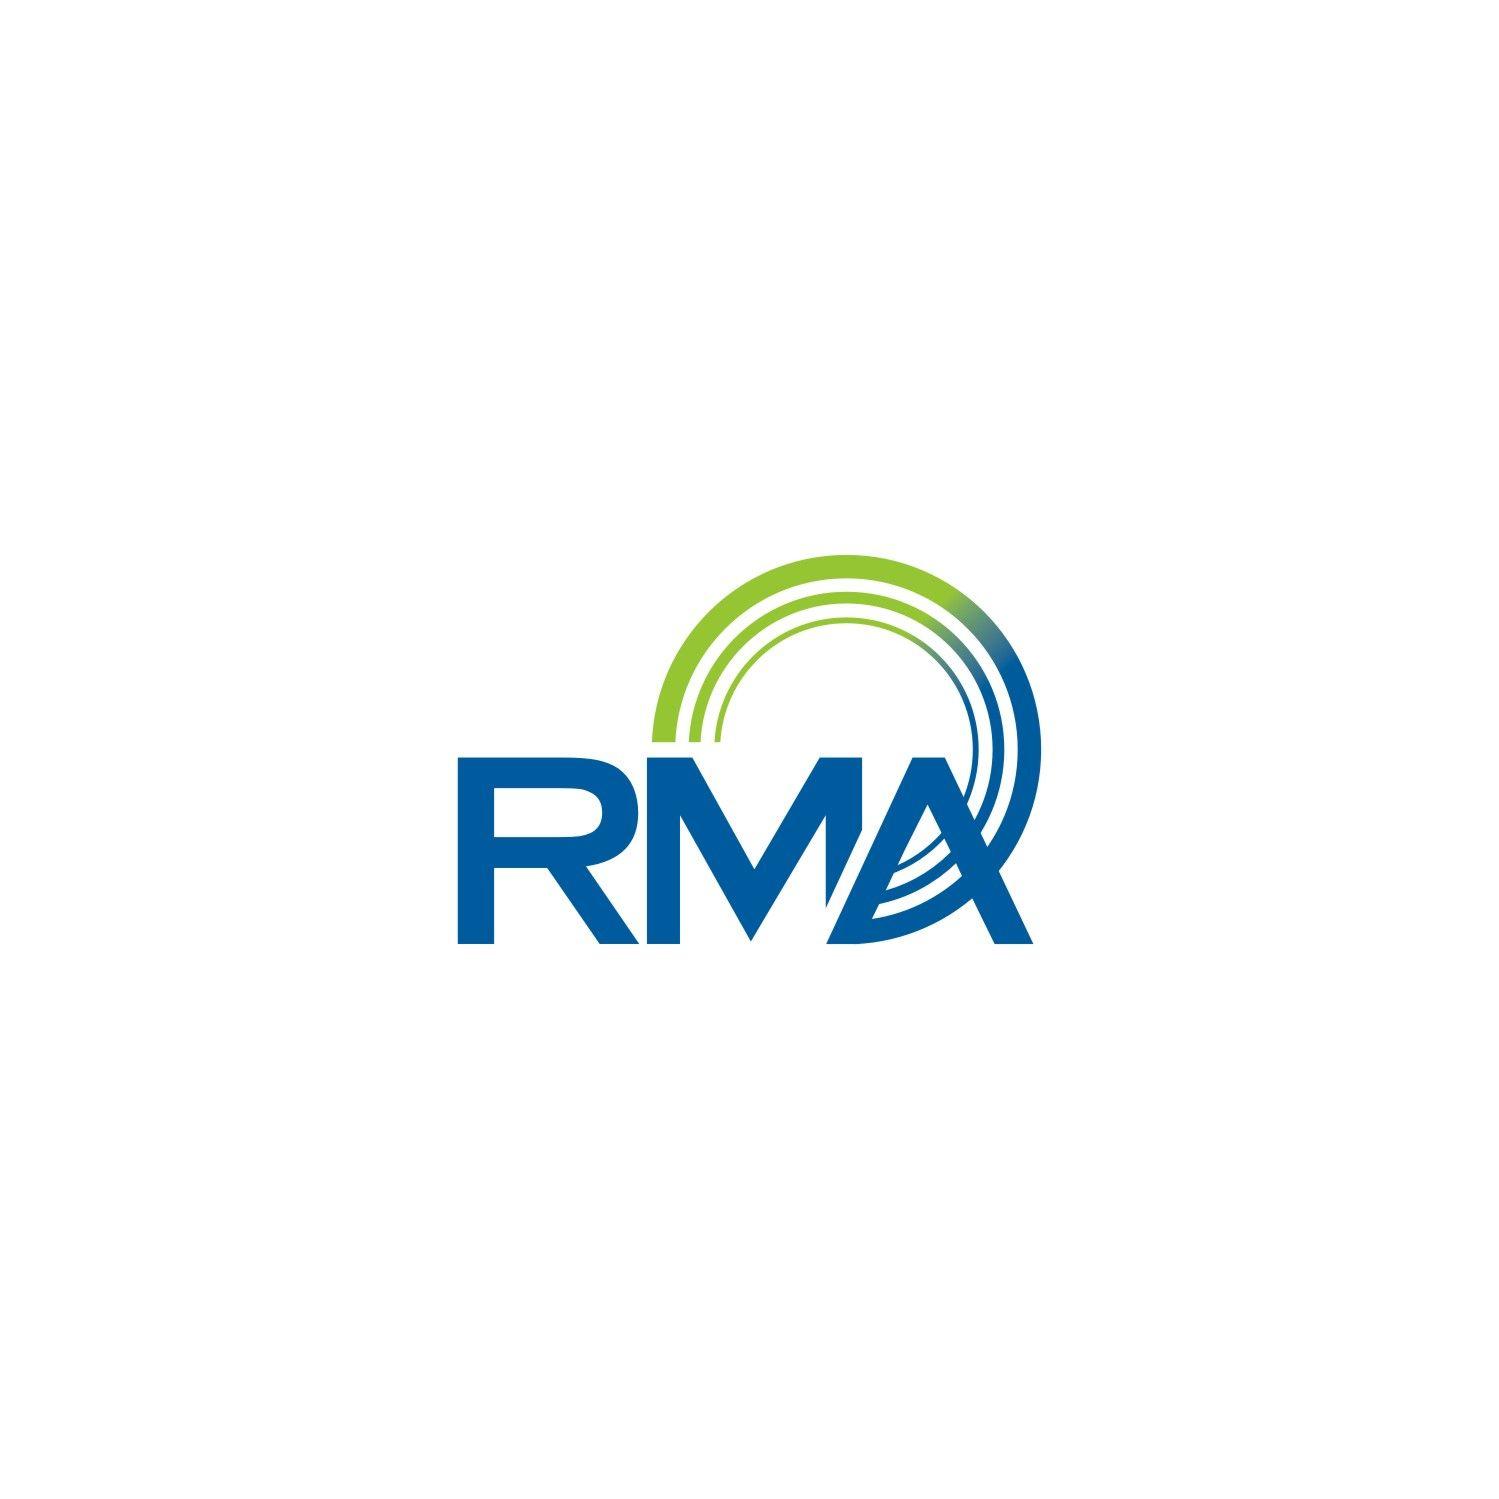 RMA Logo - Serious, Modern, Health Care Logo Design for RMA by Sushma | Design ...